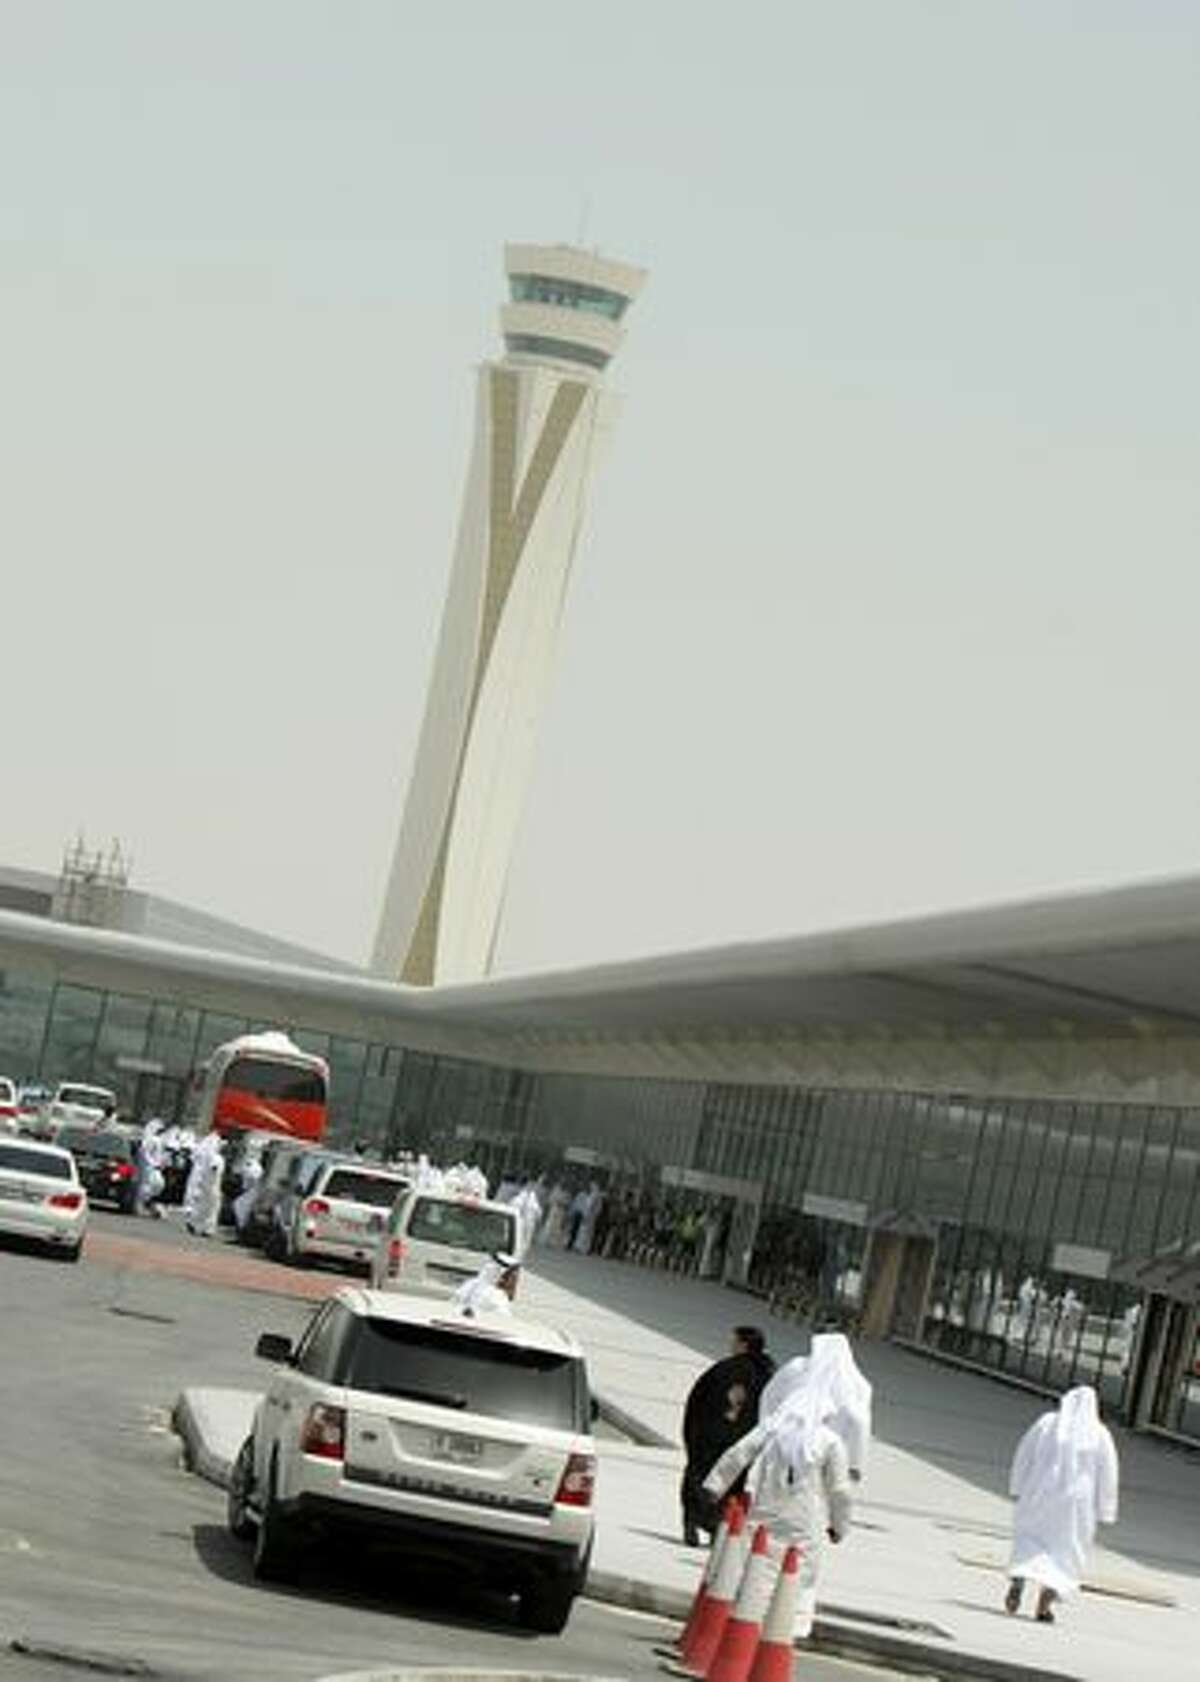 Officials and members of the media tour Dubai's new second airport, Dubai World Central-Al Maktoum International.